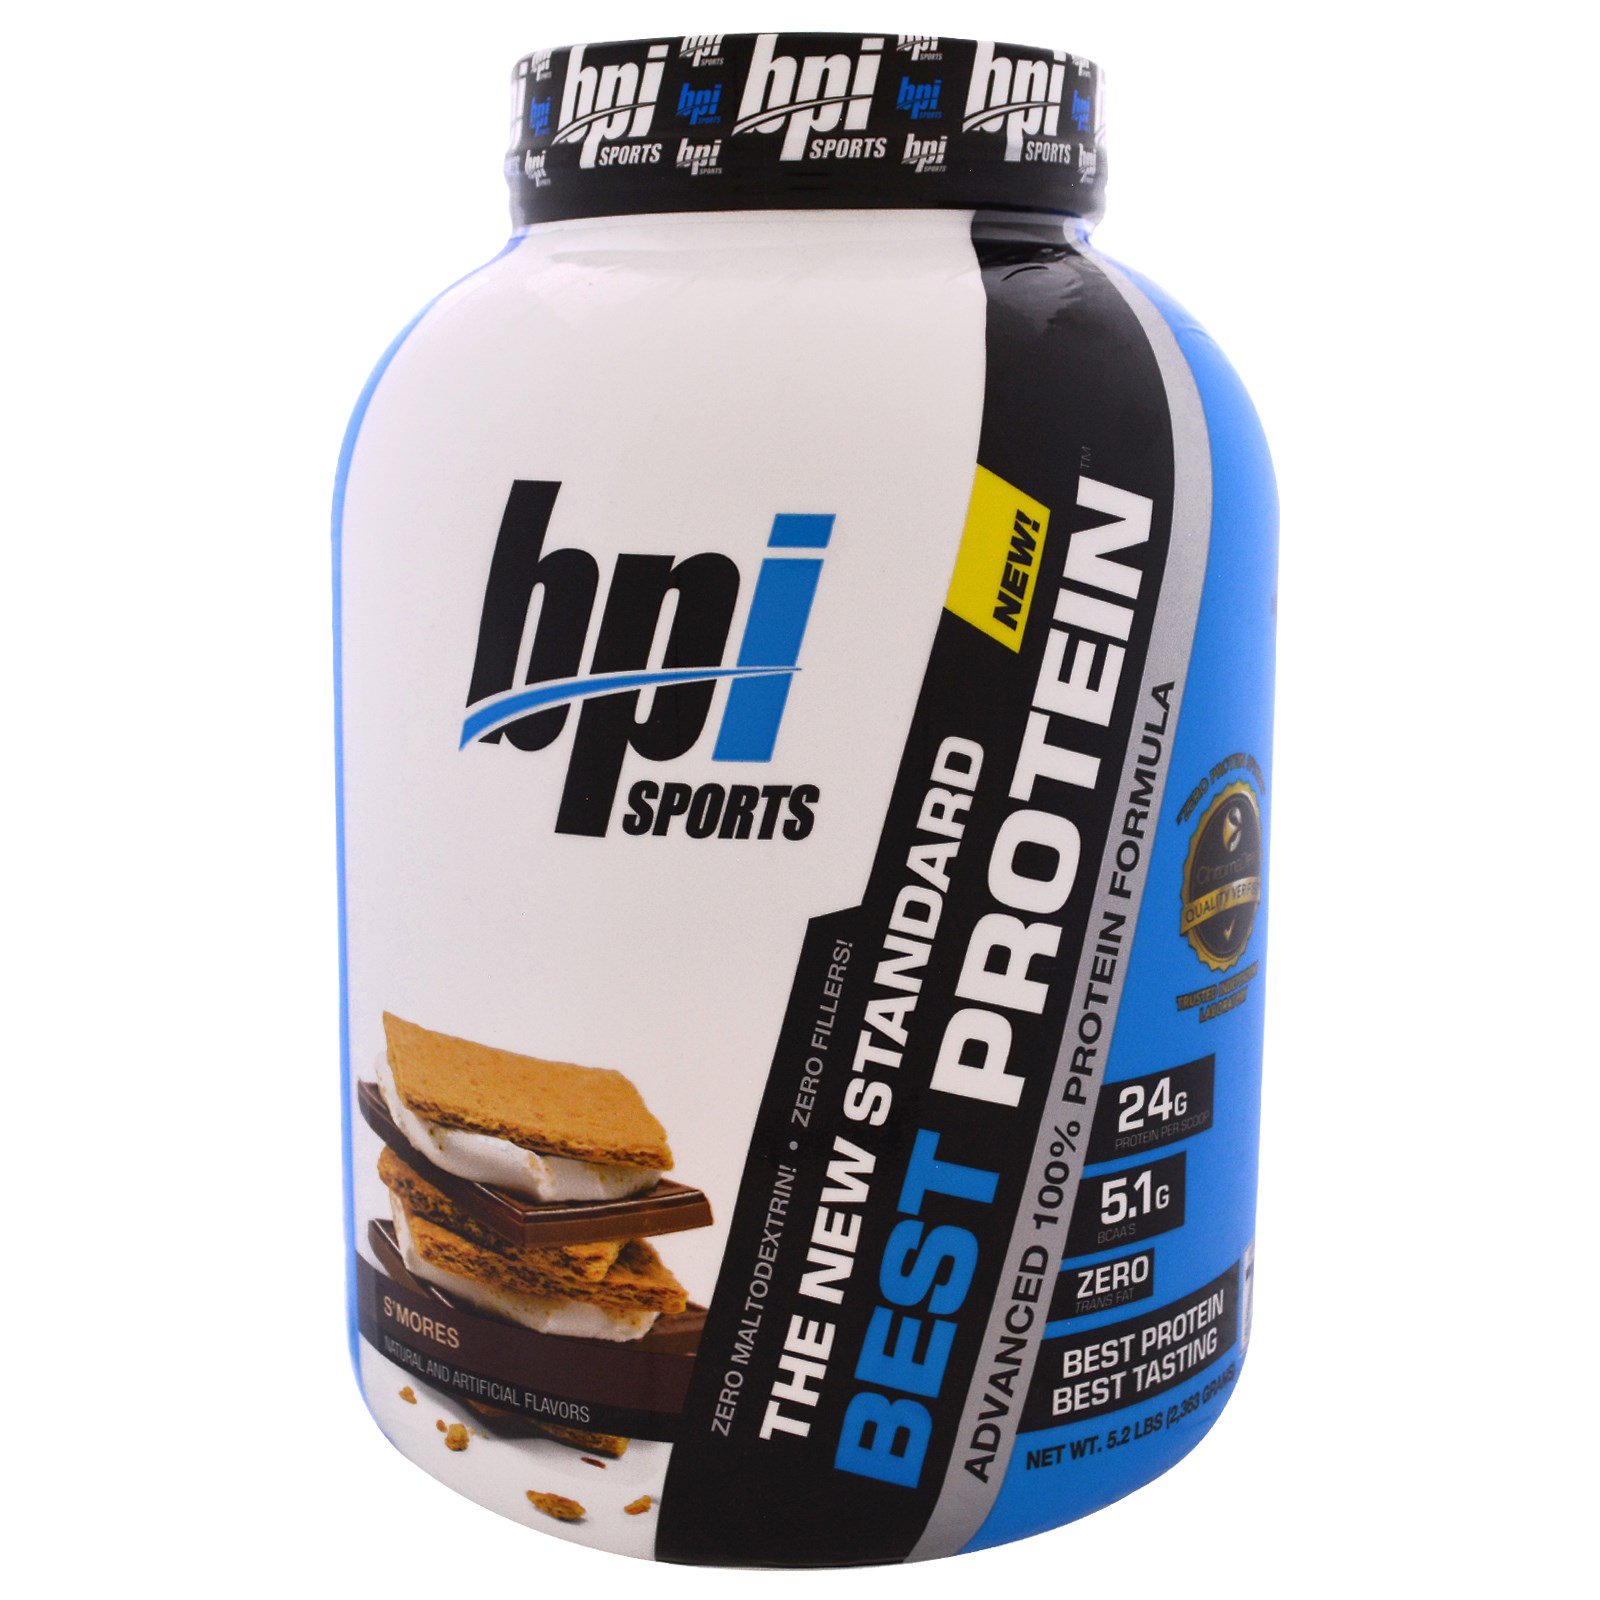 Эффективный протеин. BPI best Protein 5lb. BPI Sports протеин. Протеин artlab High Protein Formula. Белково-протеиновая смесь.